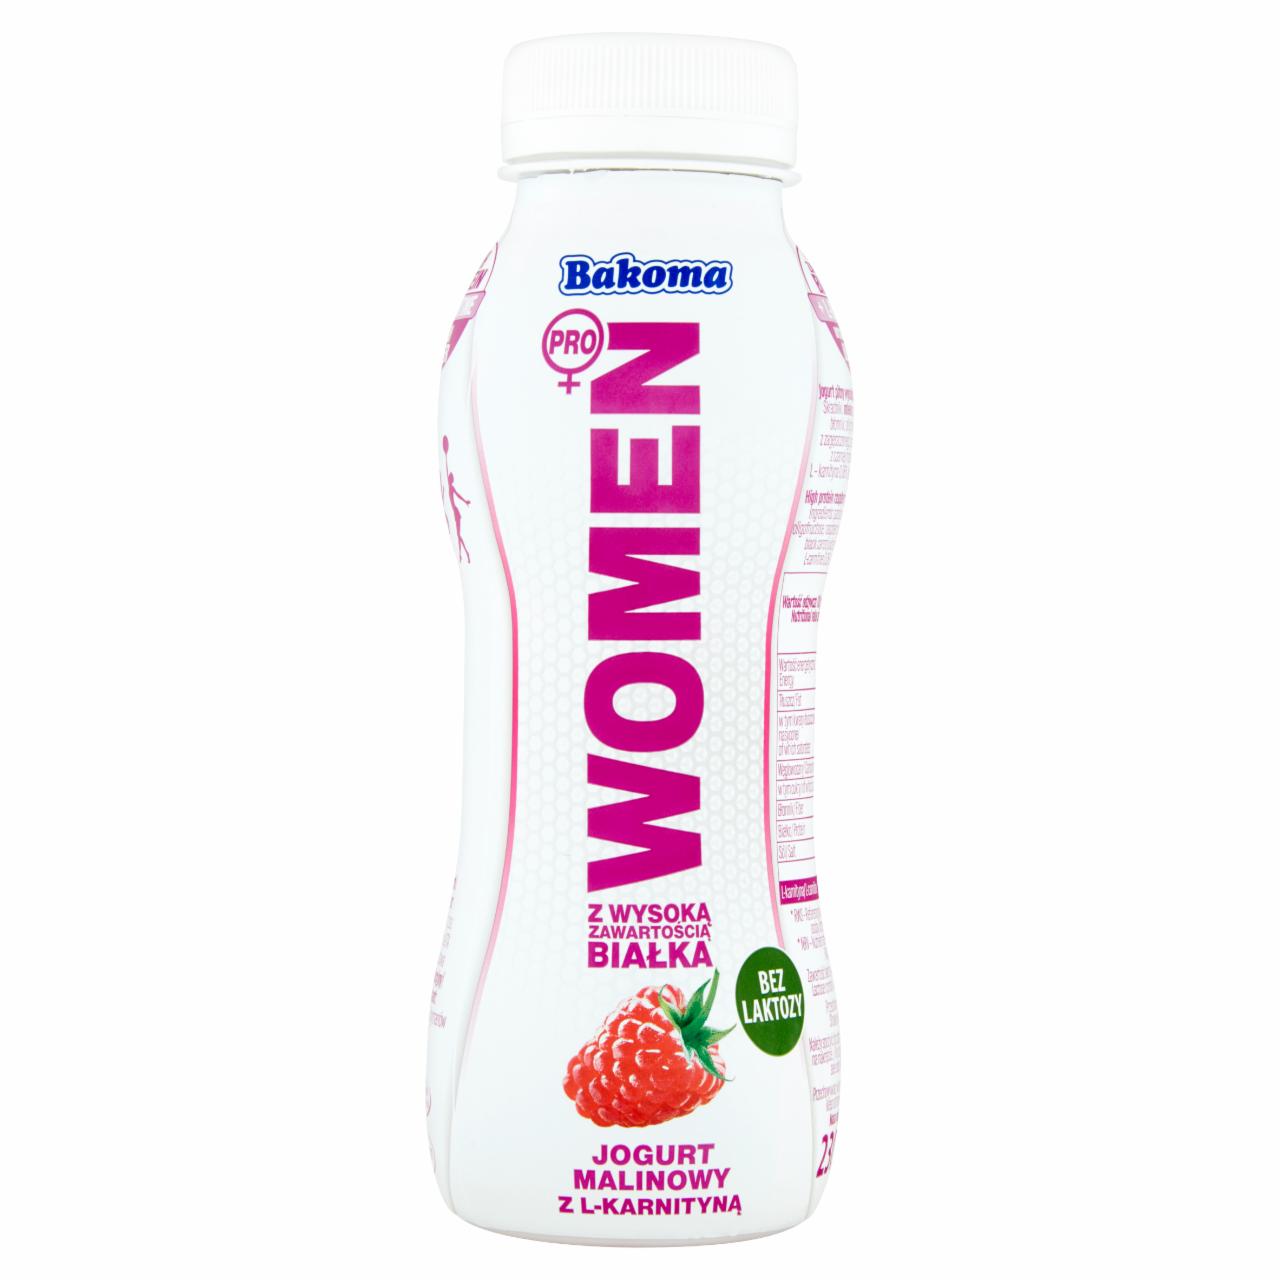 Zdjęcia - Bakoma Women Pro Jogurt z wysoką zawartością białka malinowy z L-karnityną 230 g